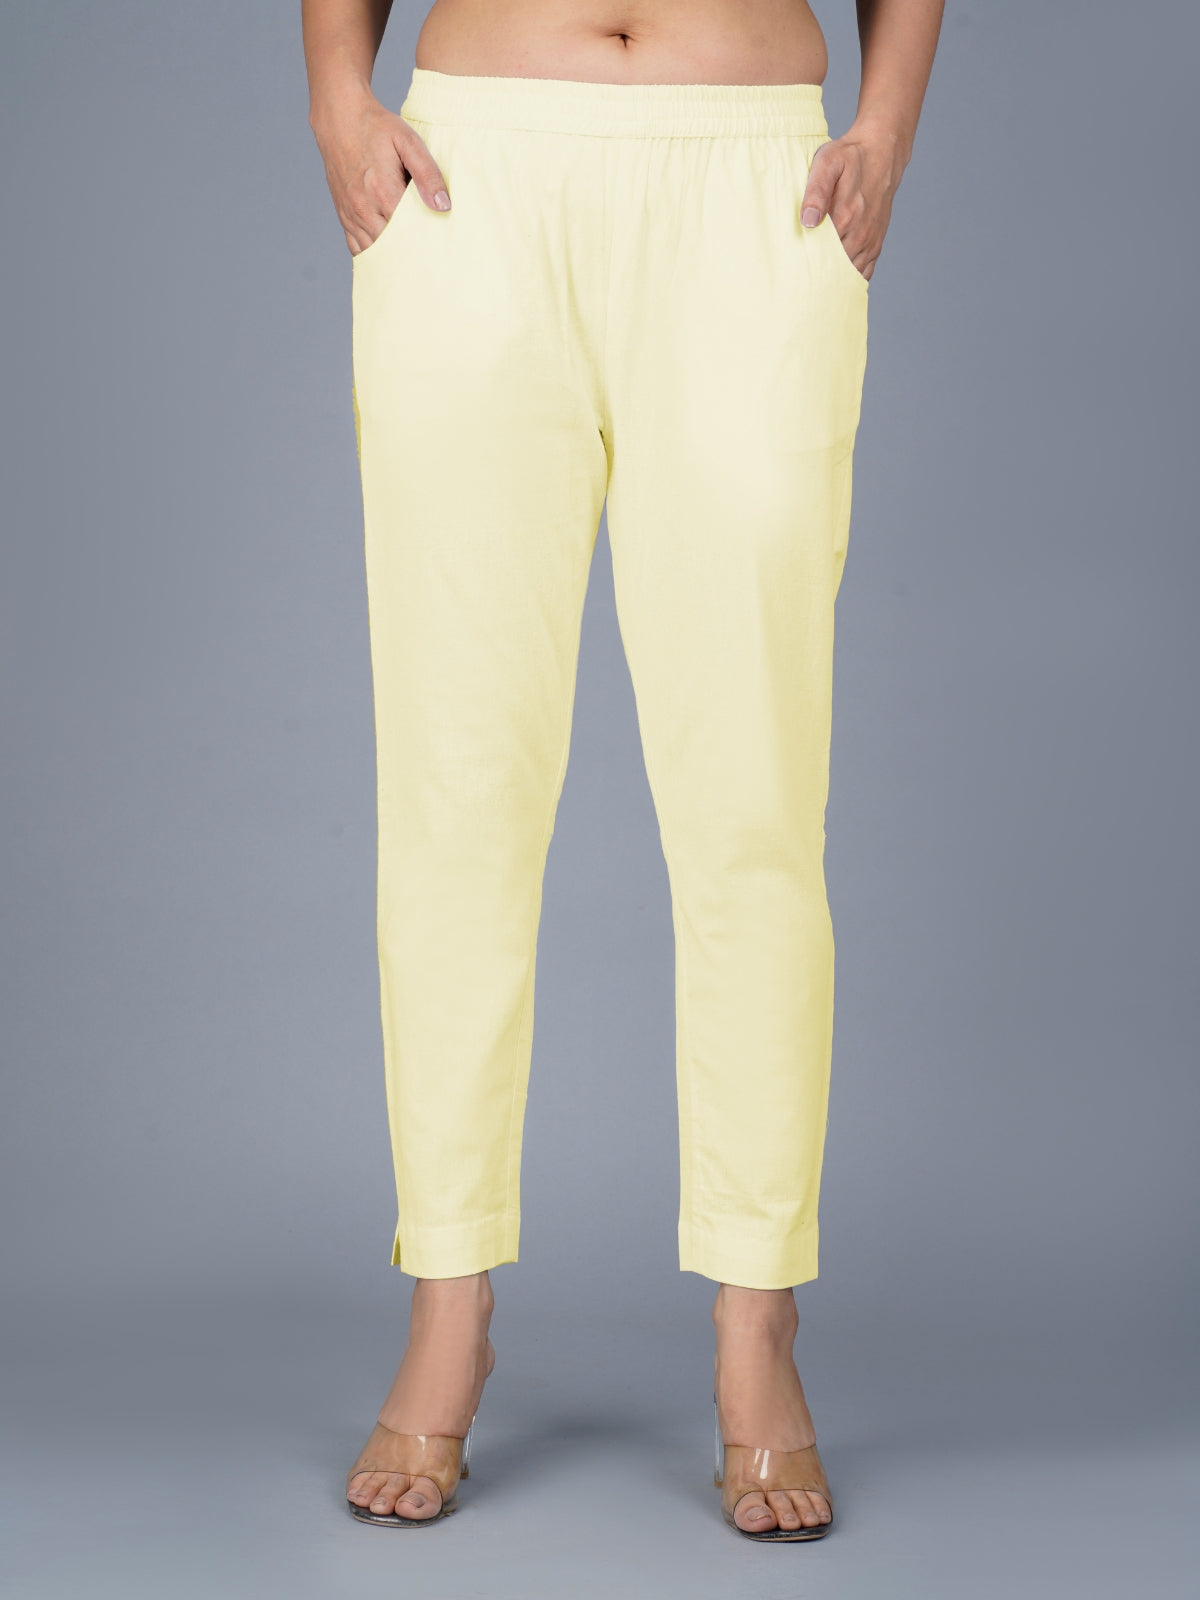 Women's Cream Regular Fit Elastic Cotton Trouser